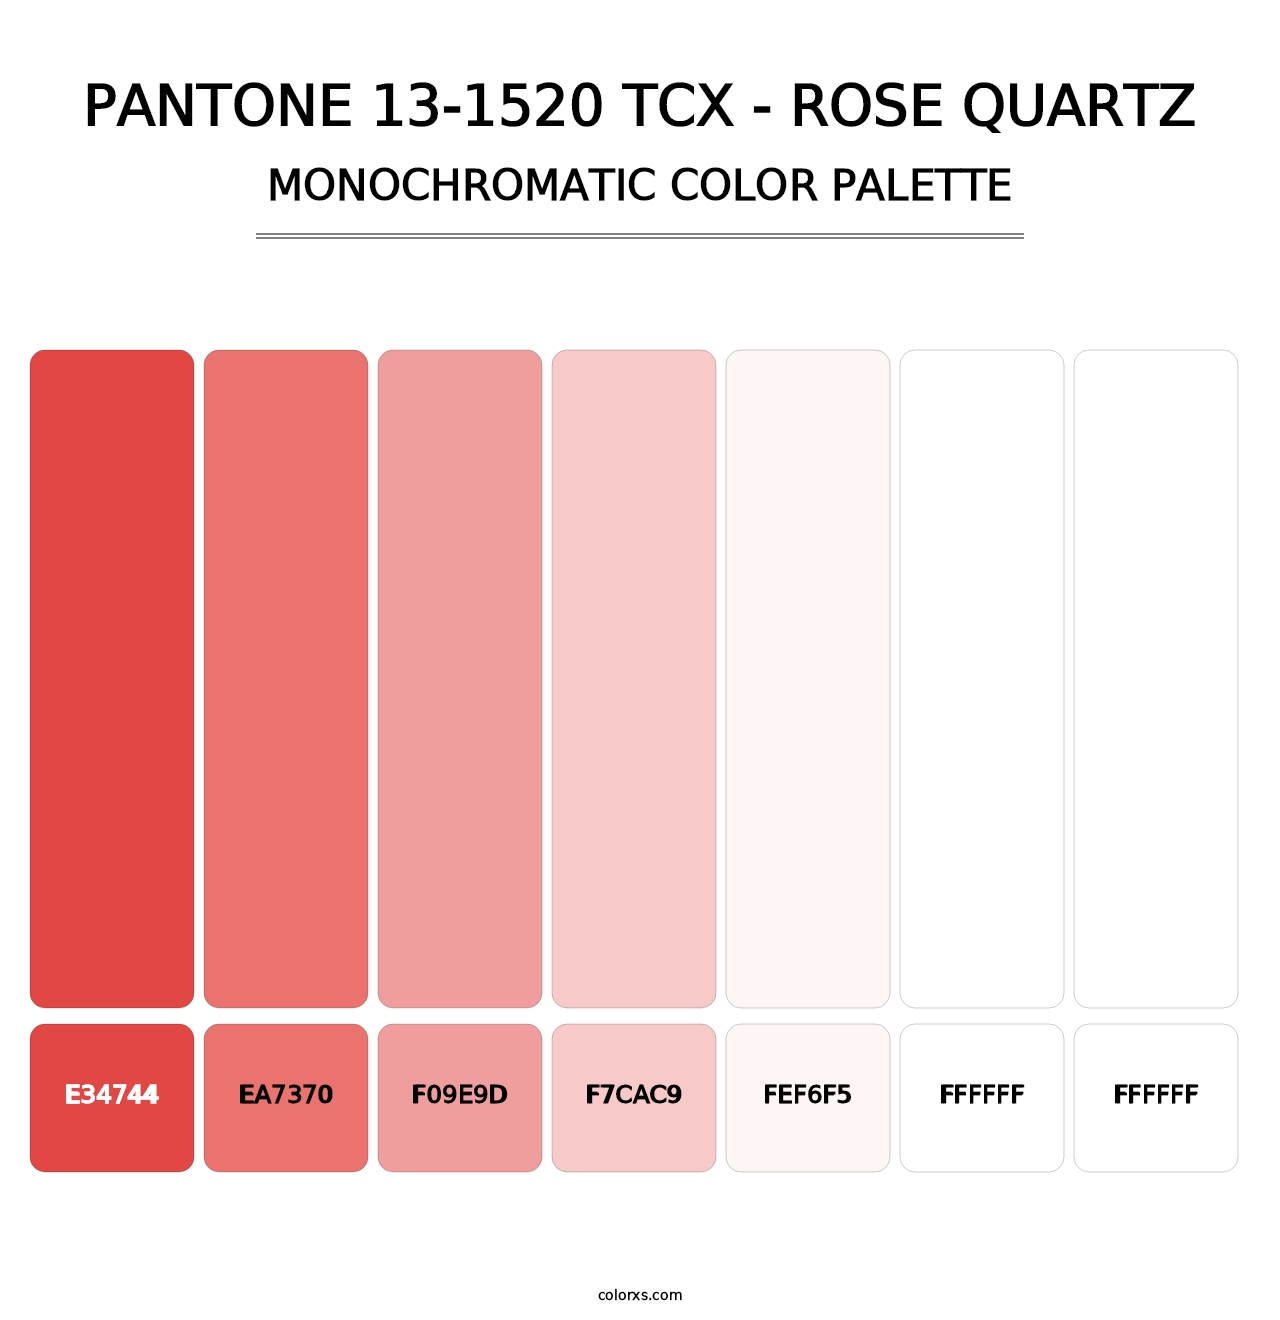 PANTONE 13-1520 TCX - Rose Quartz - Monochromatic Color Palette